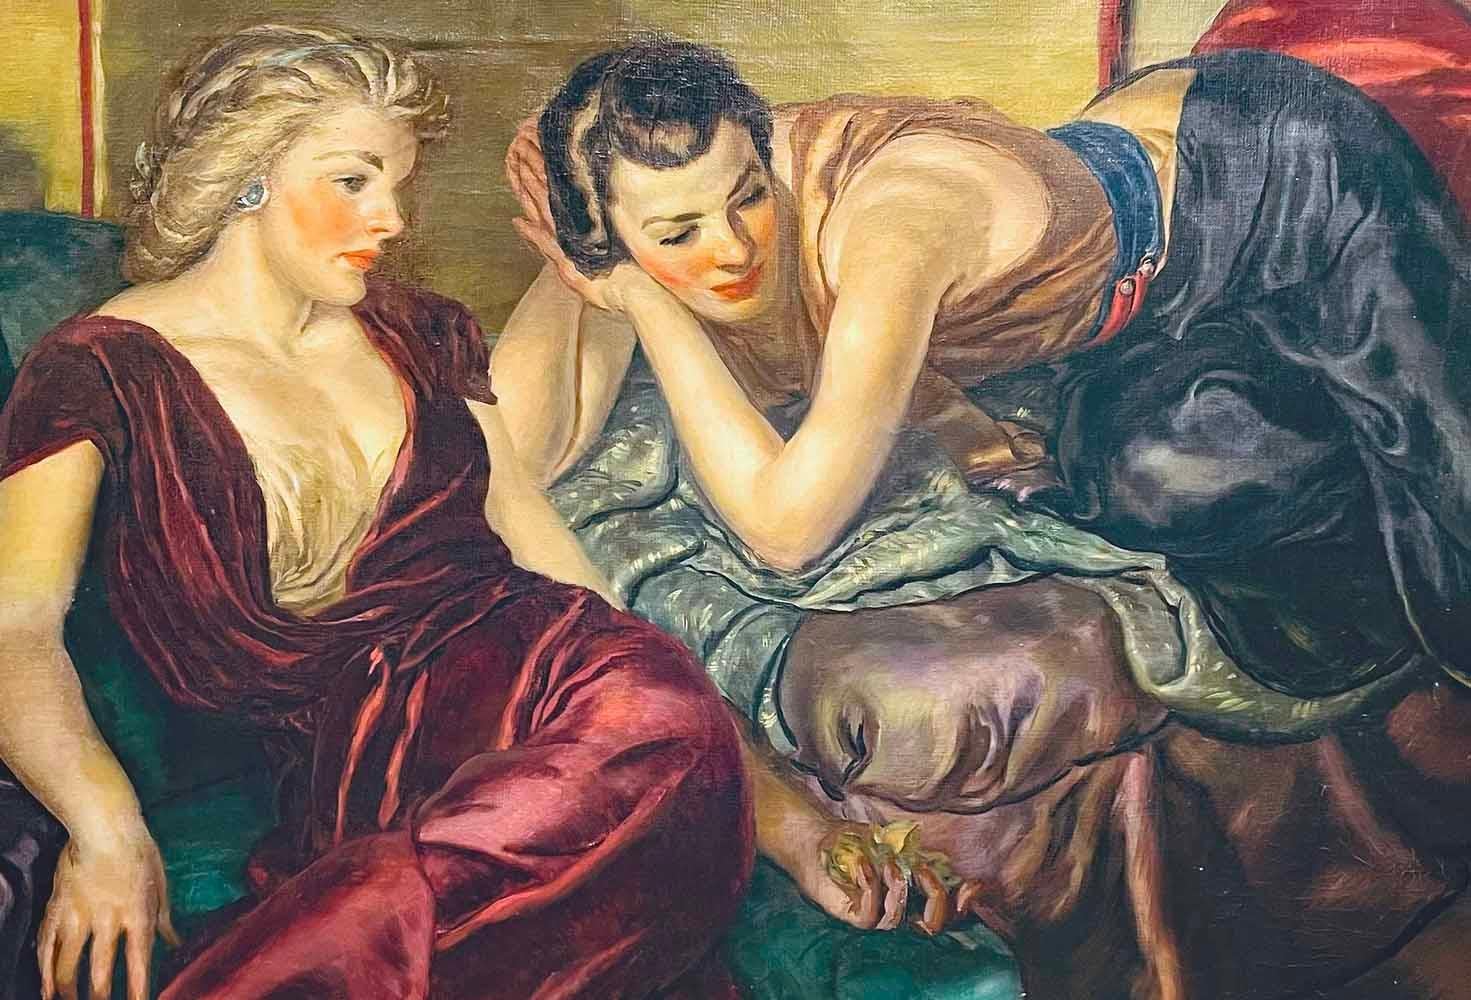 Dieses üppige Porträt zweier Frauen, die Seite an Seite zwischen Kissen und Stoffen aus Satin und Seide liegen, wurde von Rudolph Schabelitz gemalt und ist sehr üppig in Szene und Farbgebung.  Es ist nicht bekannt, wer diese Frauen waren, aber es